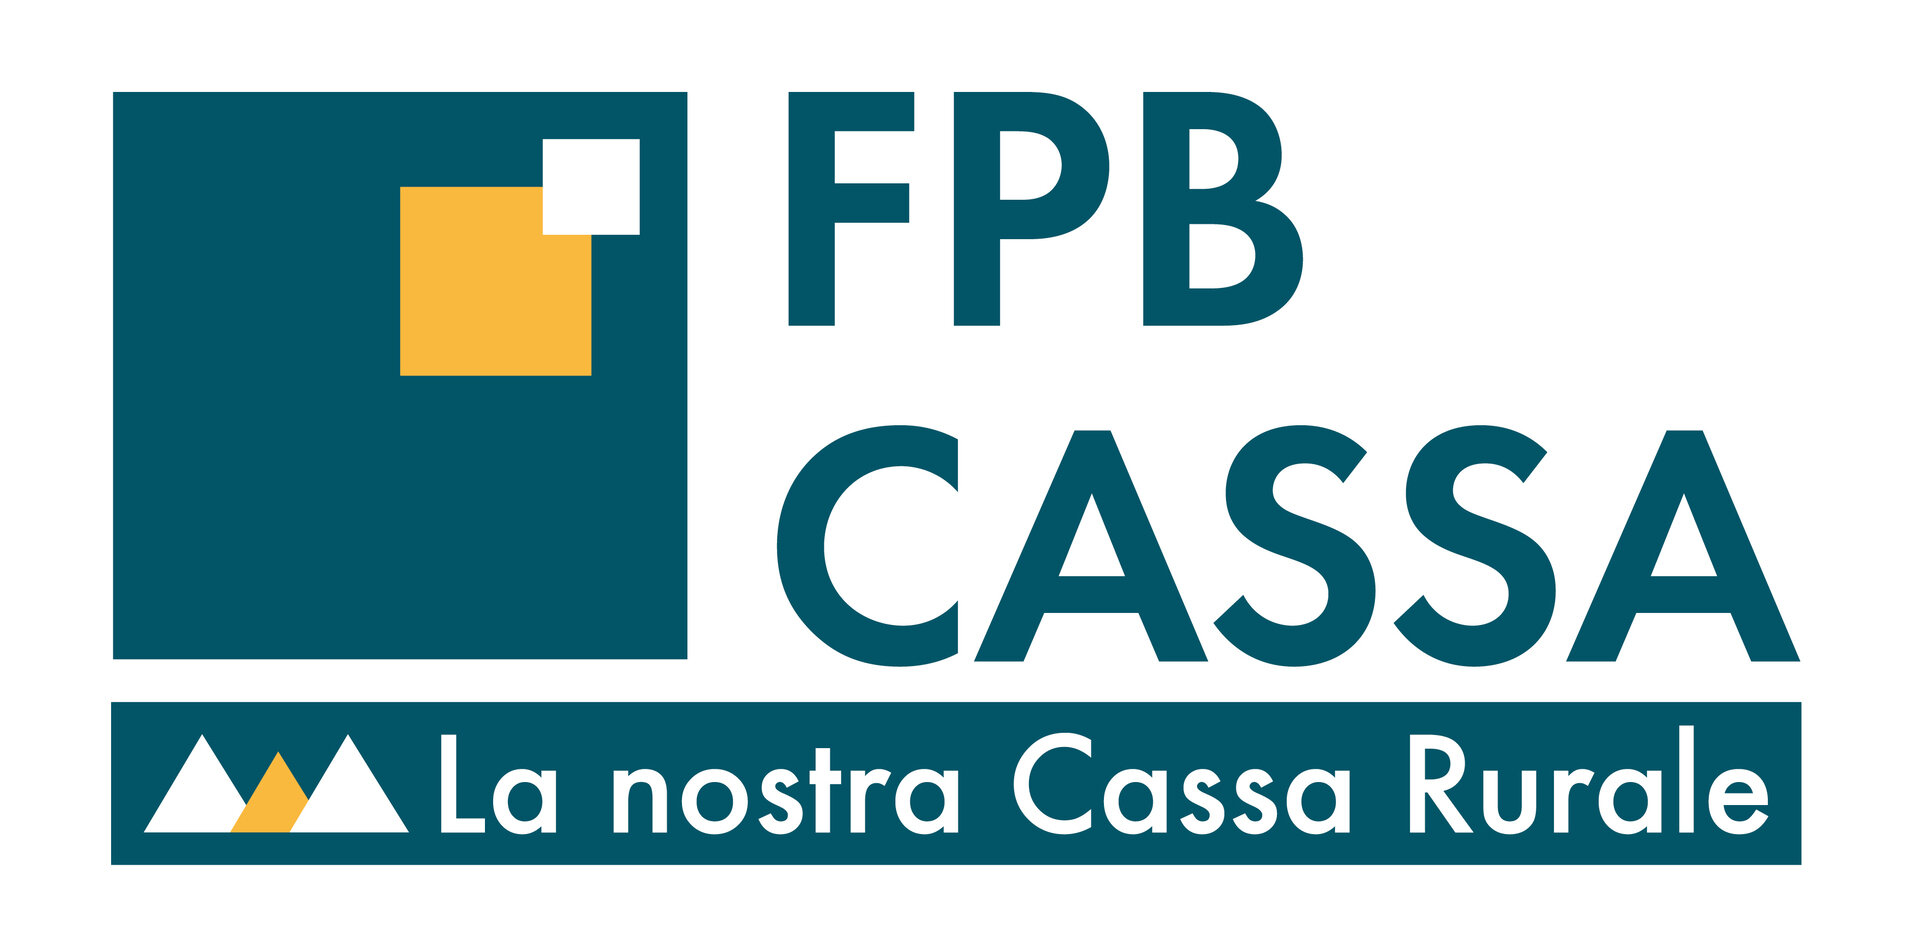 FPB Cassa Di Fassa Primiero Belluno   Branch Office Of Canazei